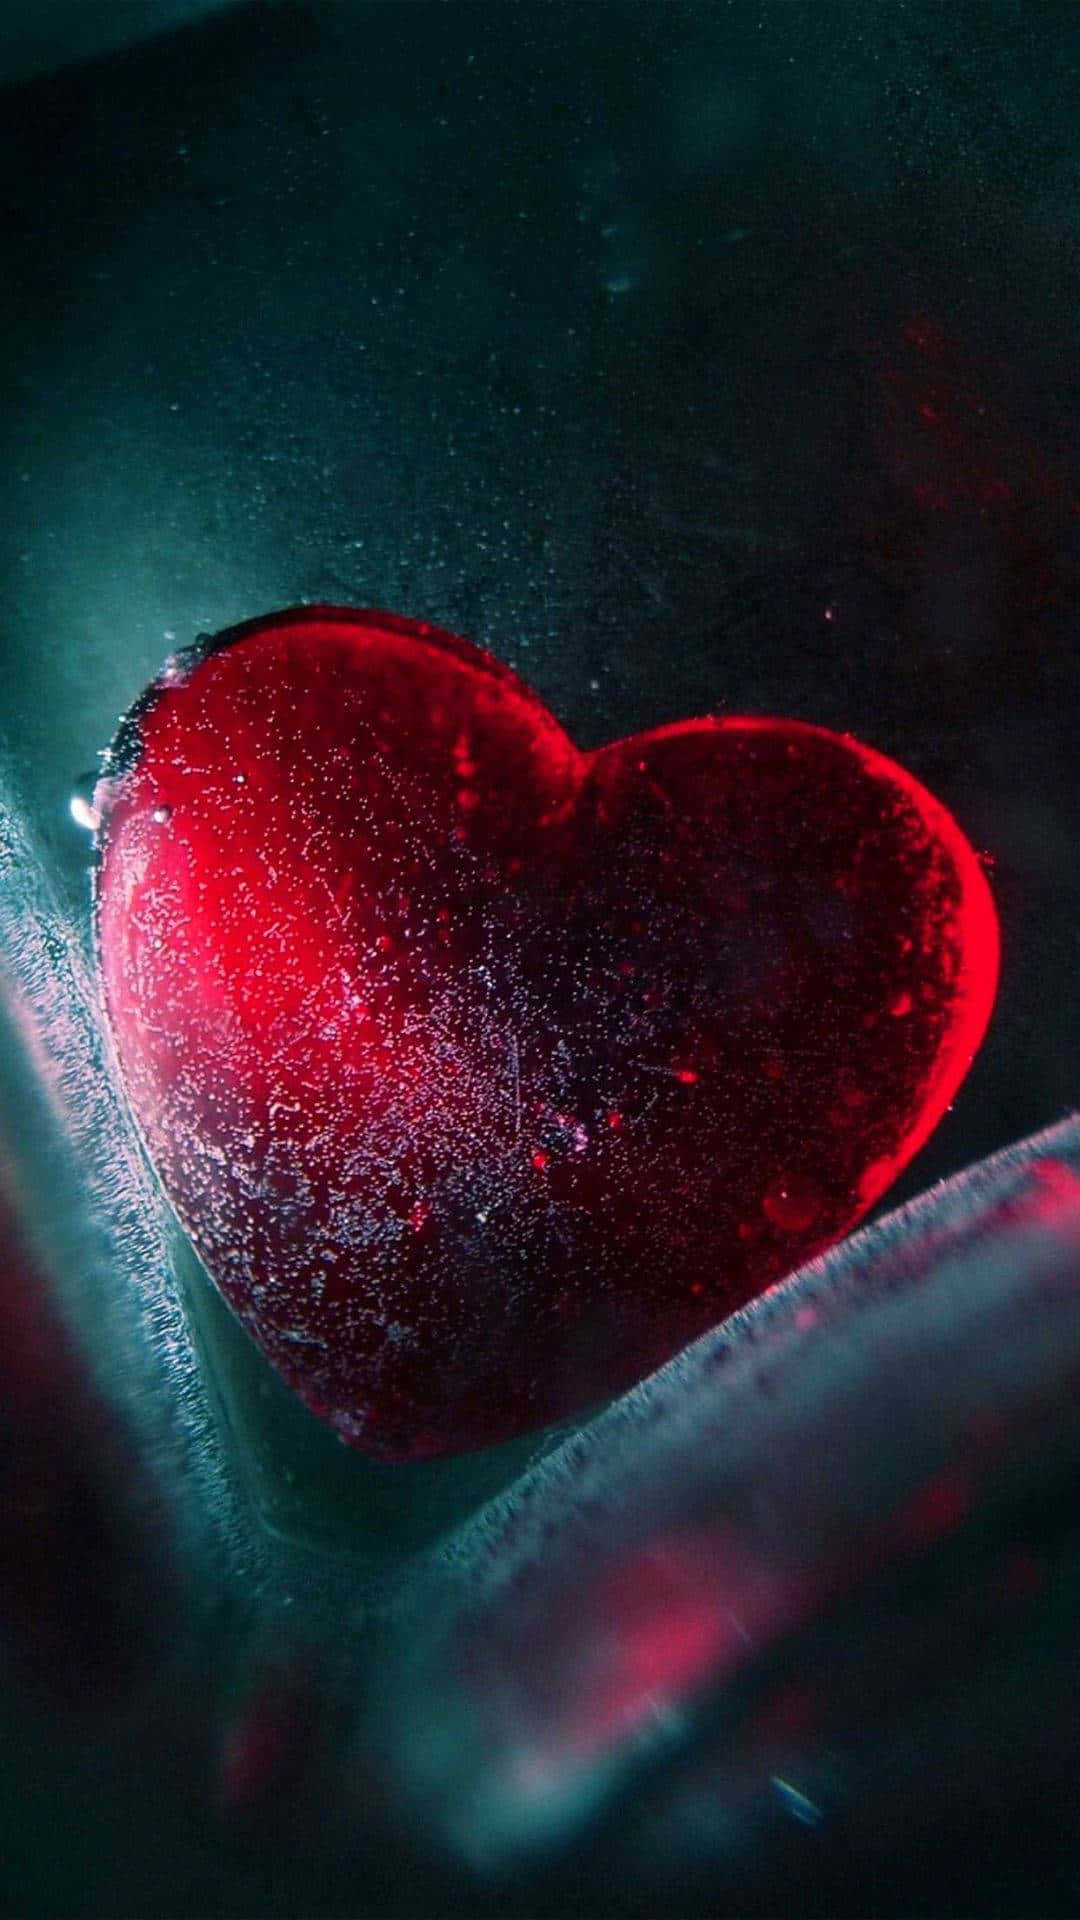 Frosted Heart Aesthetic Love.jpg Wallpaper